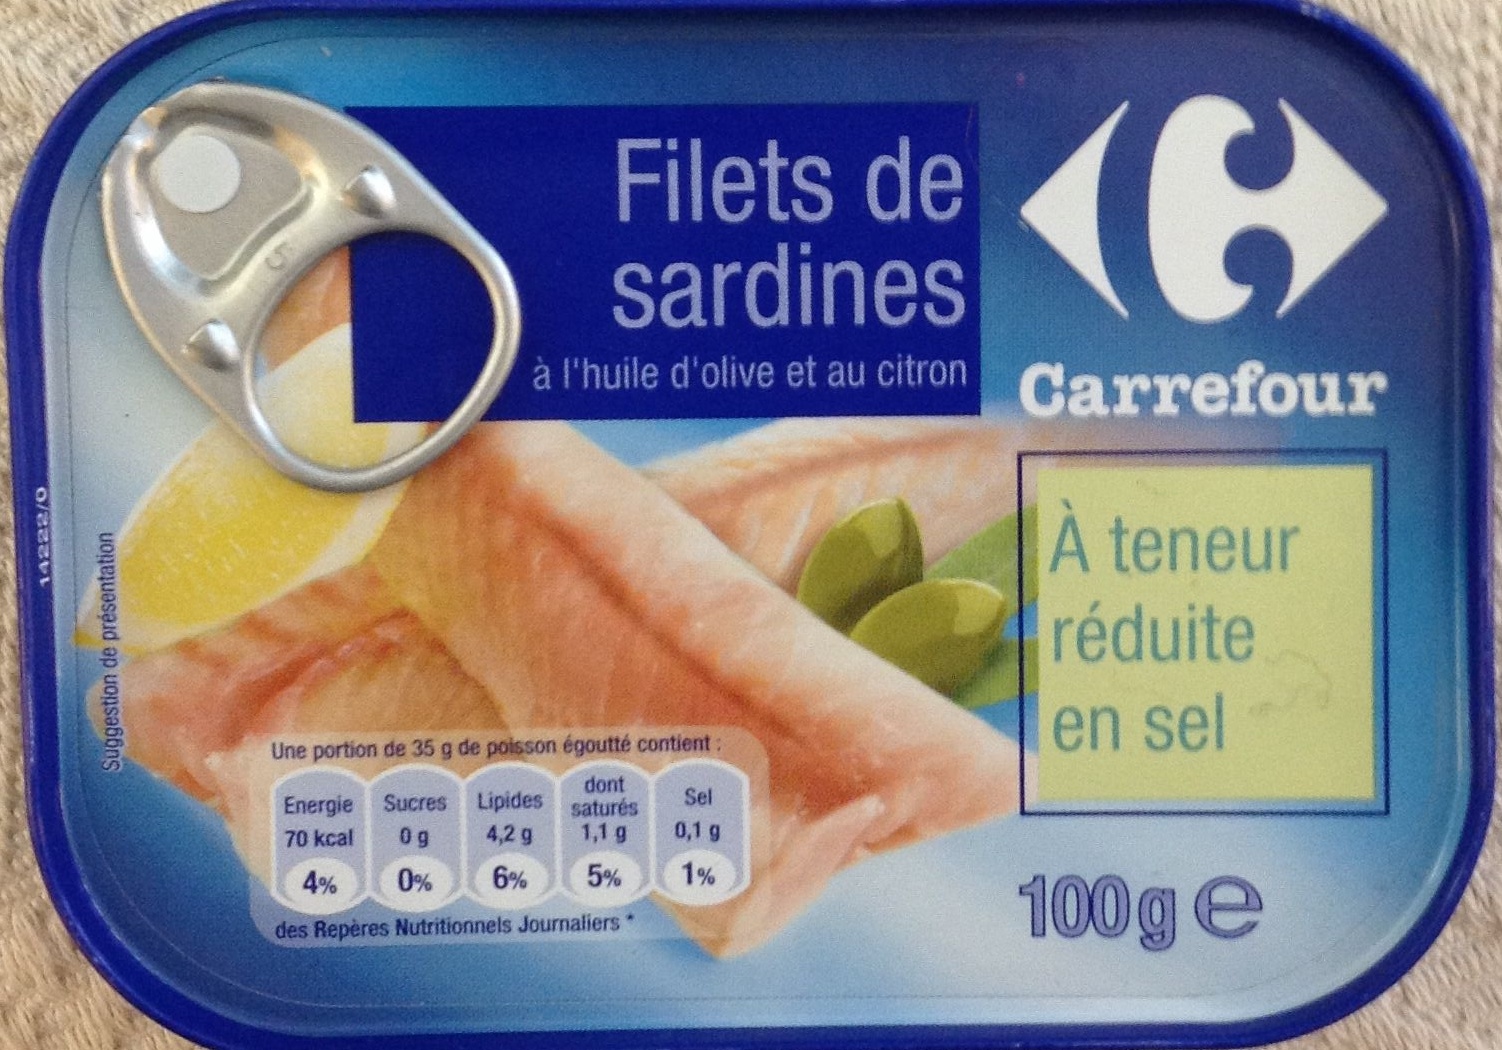 Filets de sardines à huile d'olive et au citron (À teneur réduite en sel) - Produit